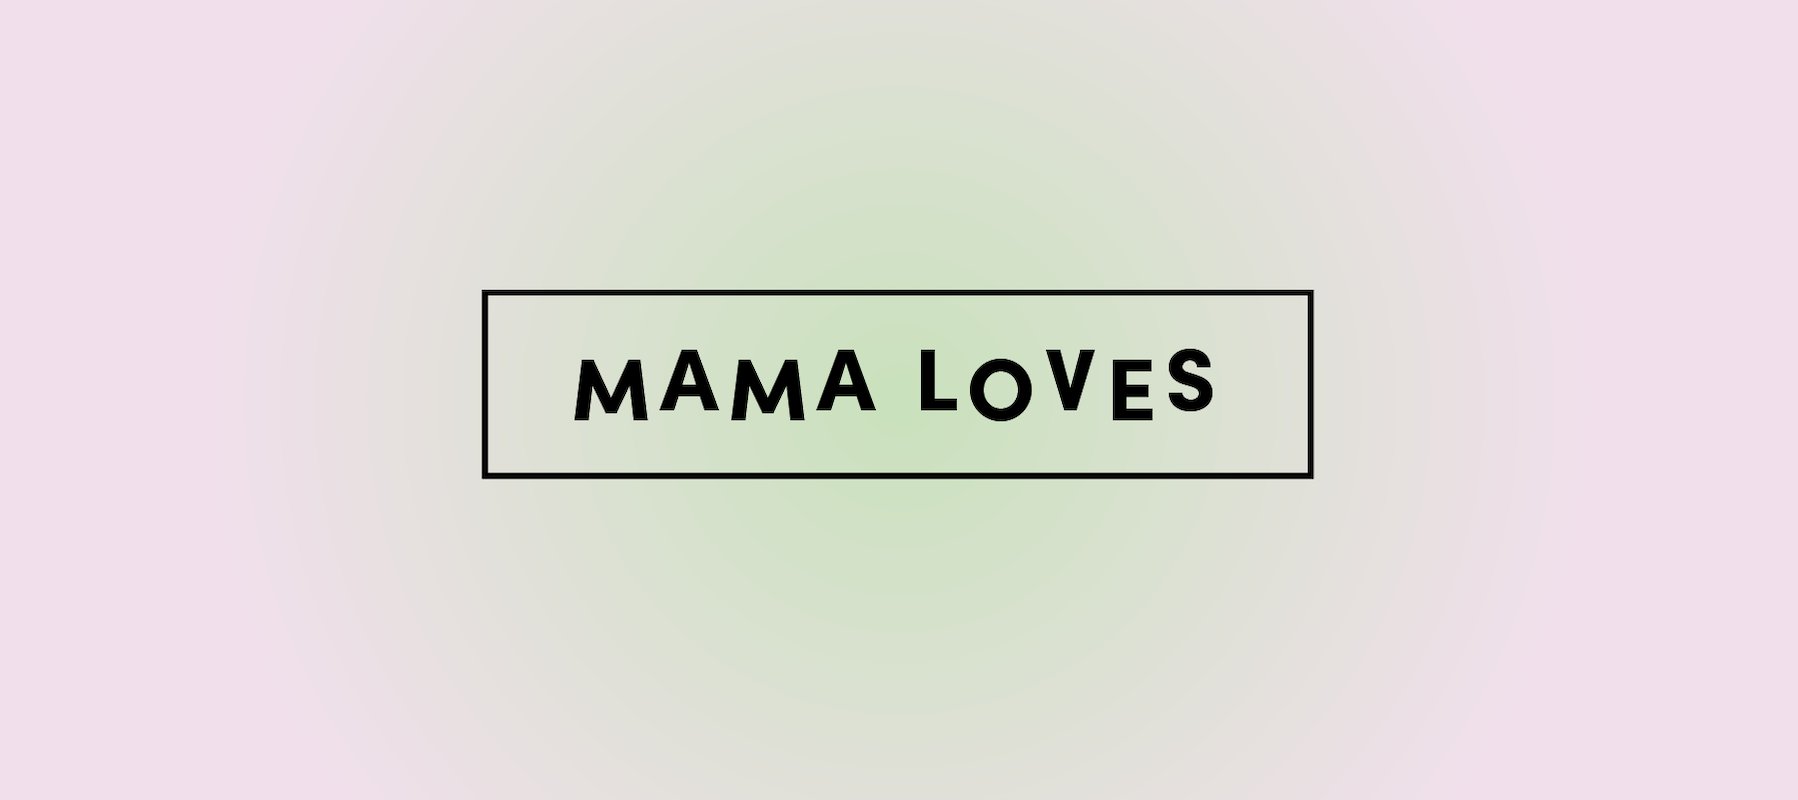 Mama loves...